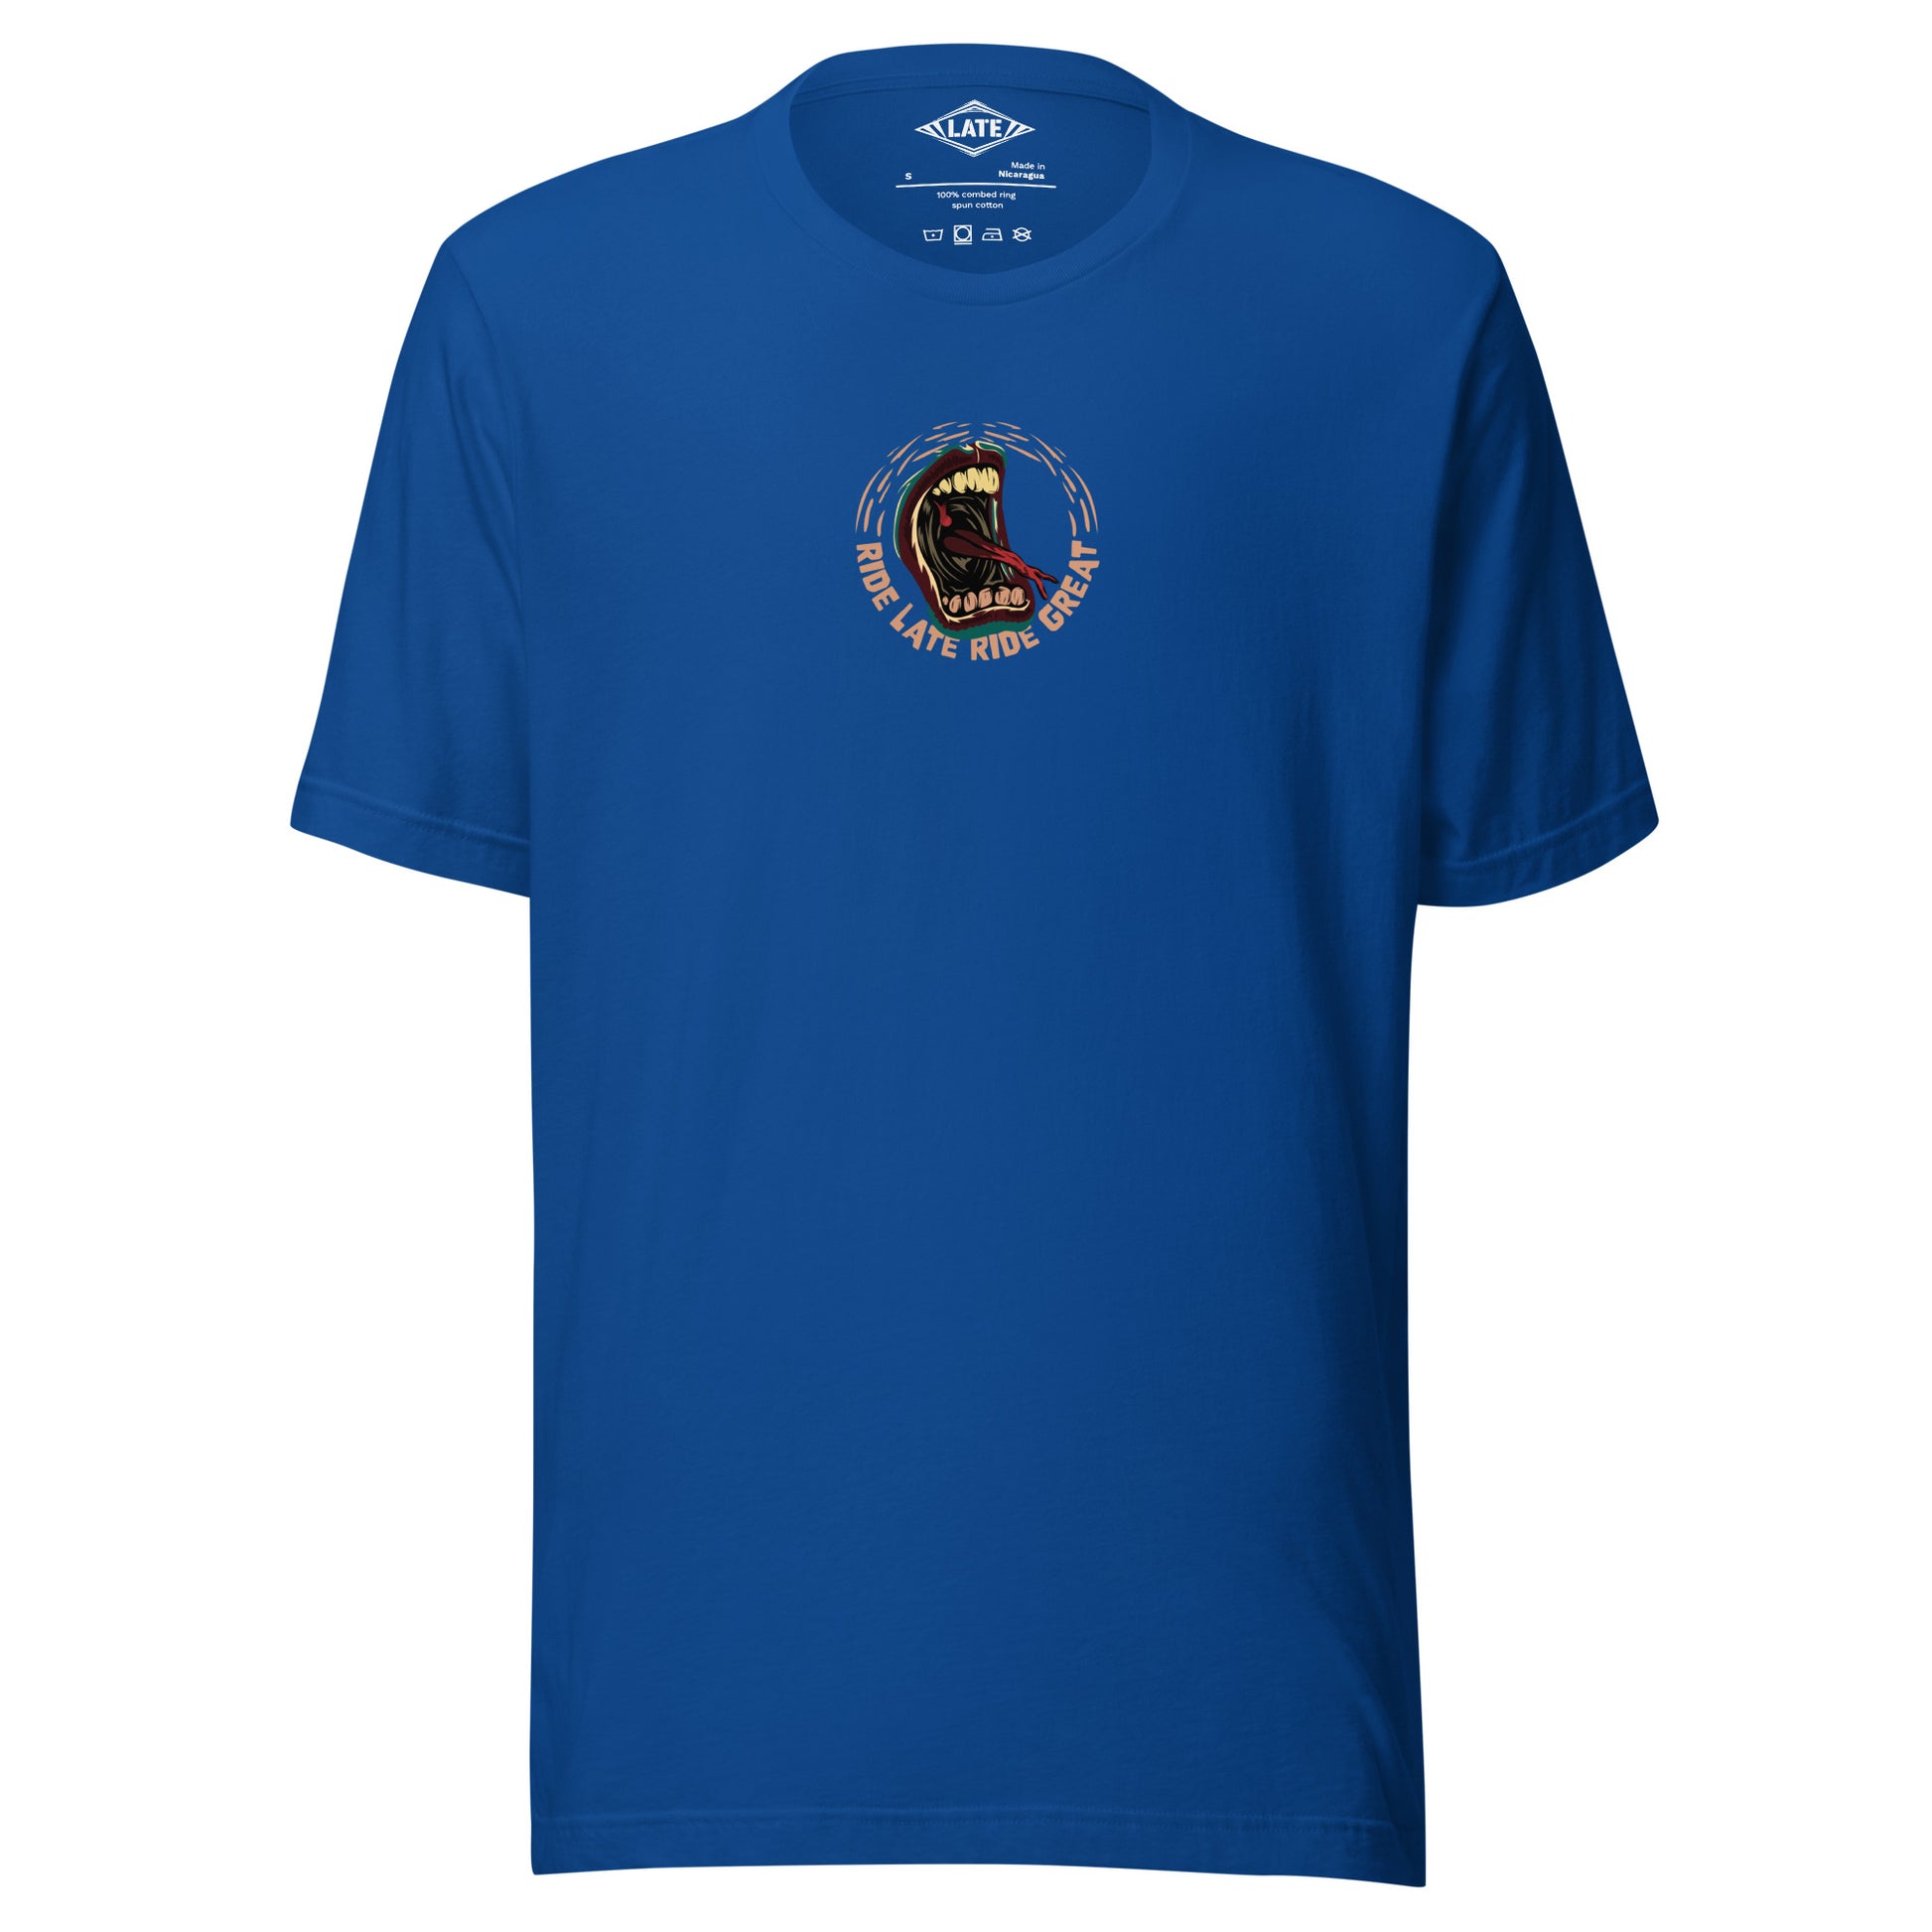 T-Shirt Ride Late Live Great skate style volcom avec un design de bouche qui tire la langue couleur du t-shirt unisex bleu royal